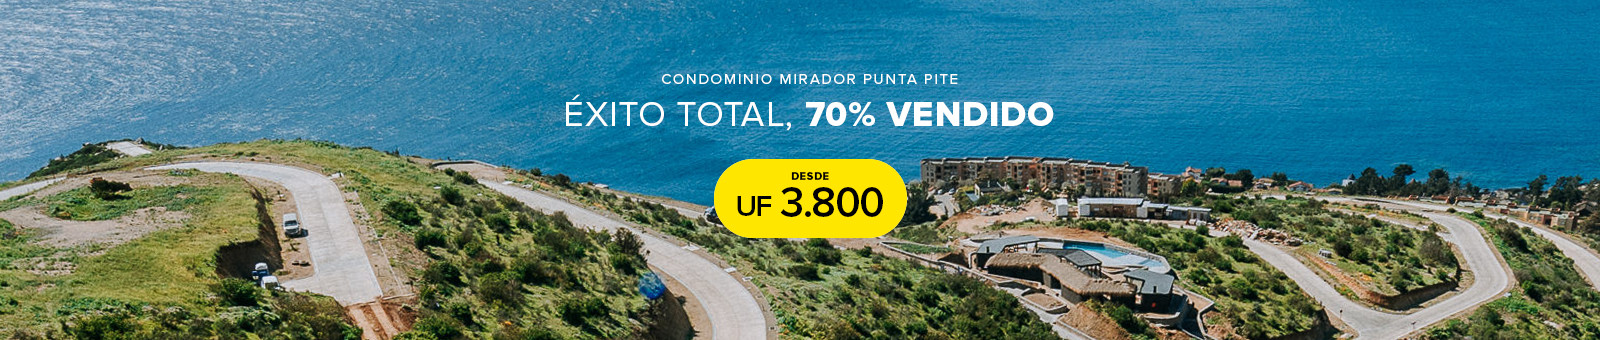 Condominio Mirador Punta Pite en venta 